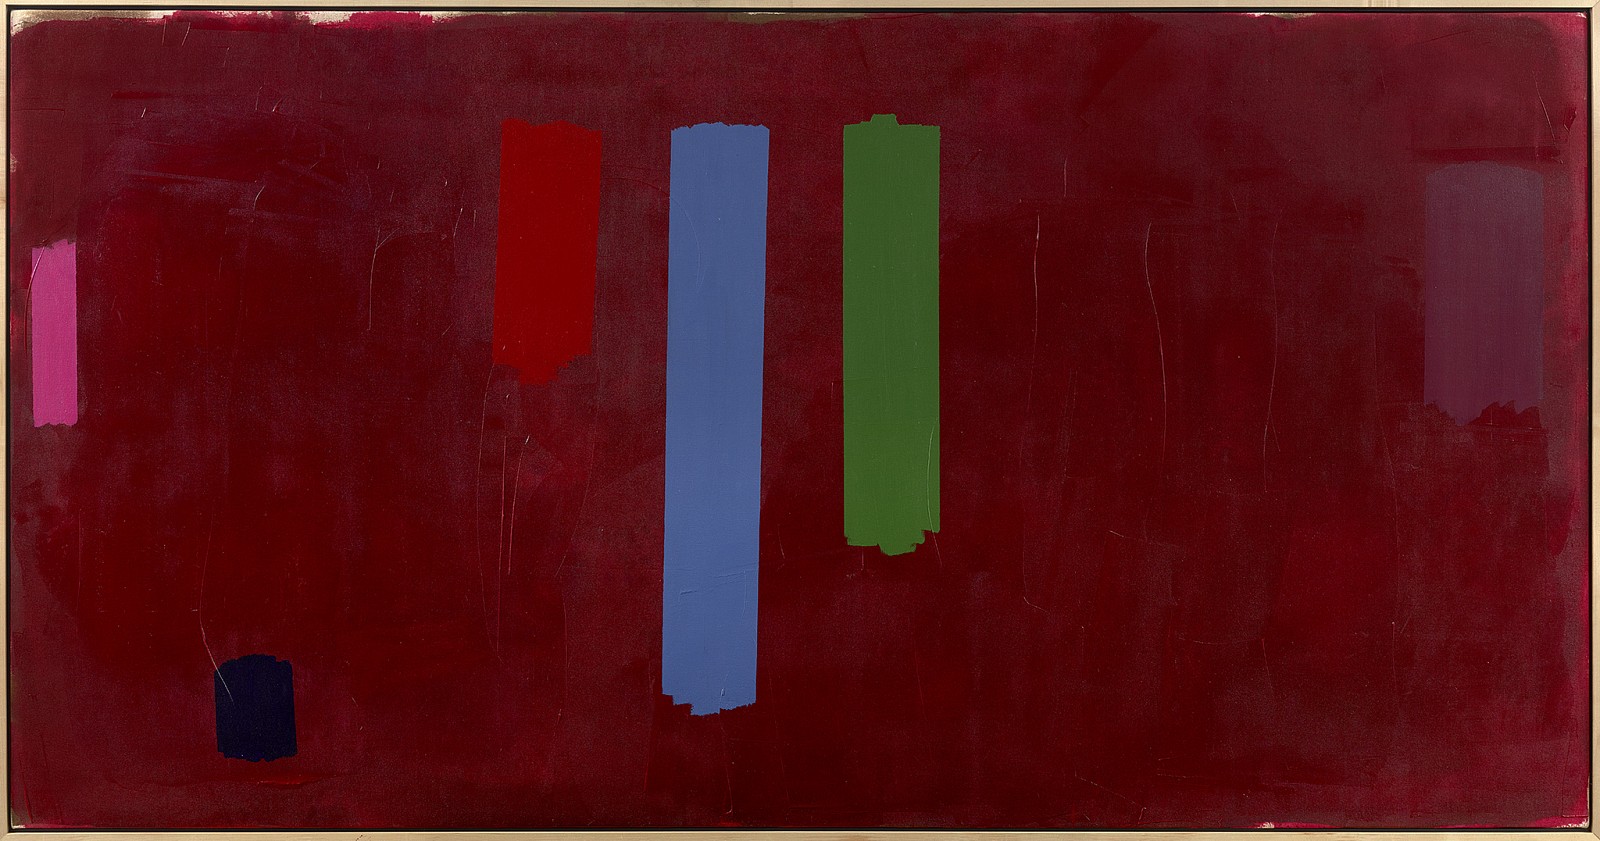 William Perehudoff, AC-79-10, 1979
Acrylic on canvas, 43 3/8 x 84 in. (110.2 x 213.4 cm)
PER-00072